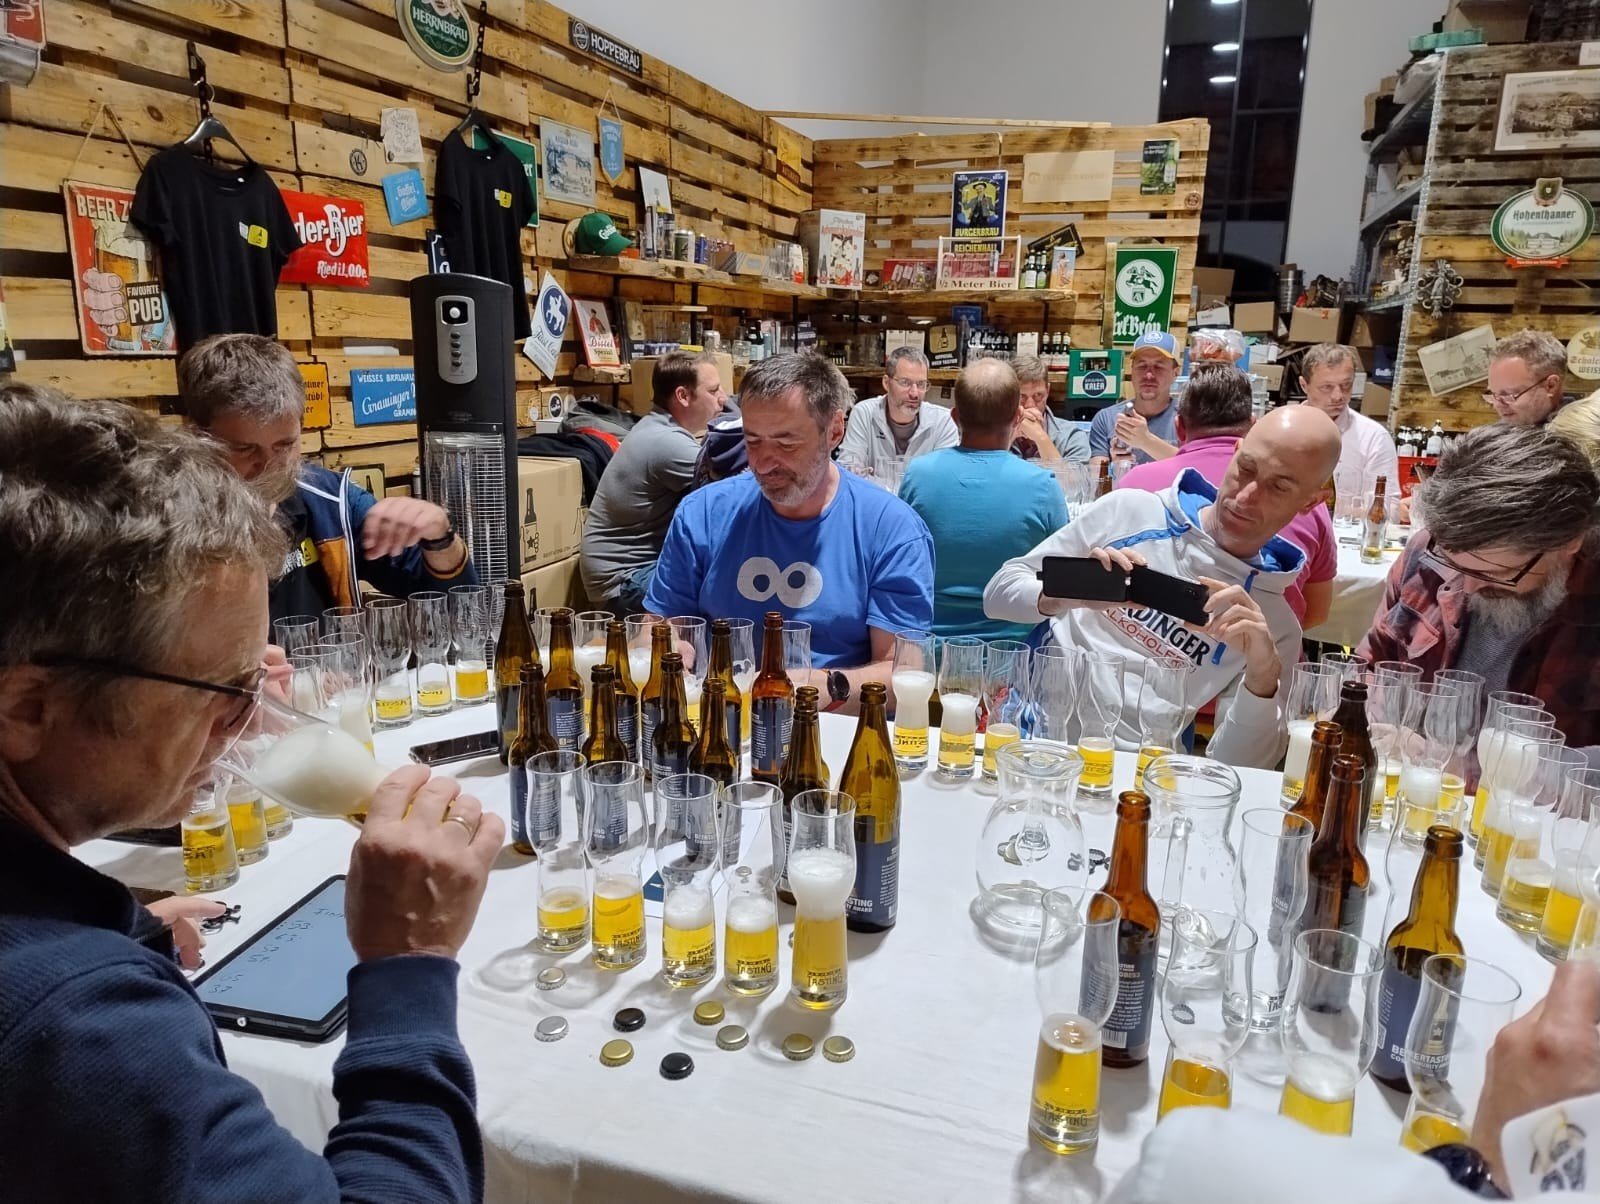 BeerTasting Community Award Brauerei aus Österreich